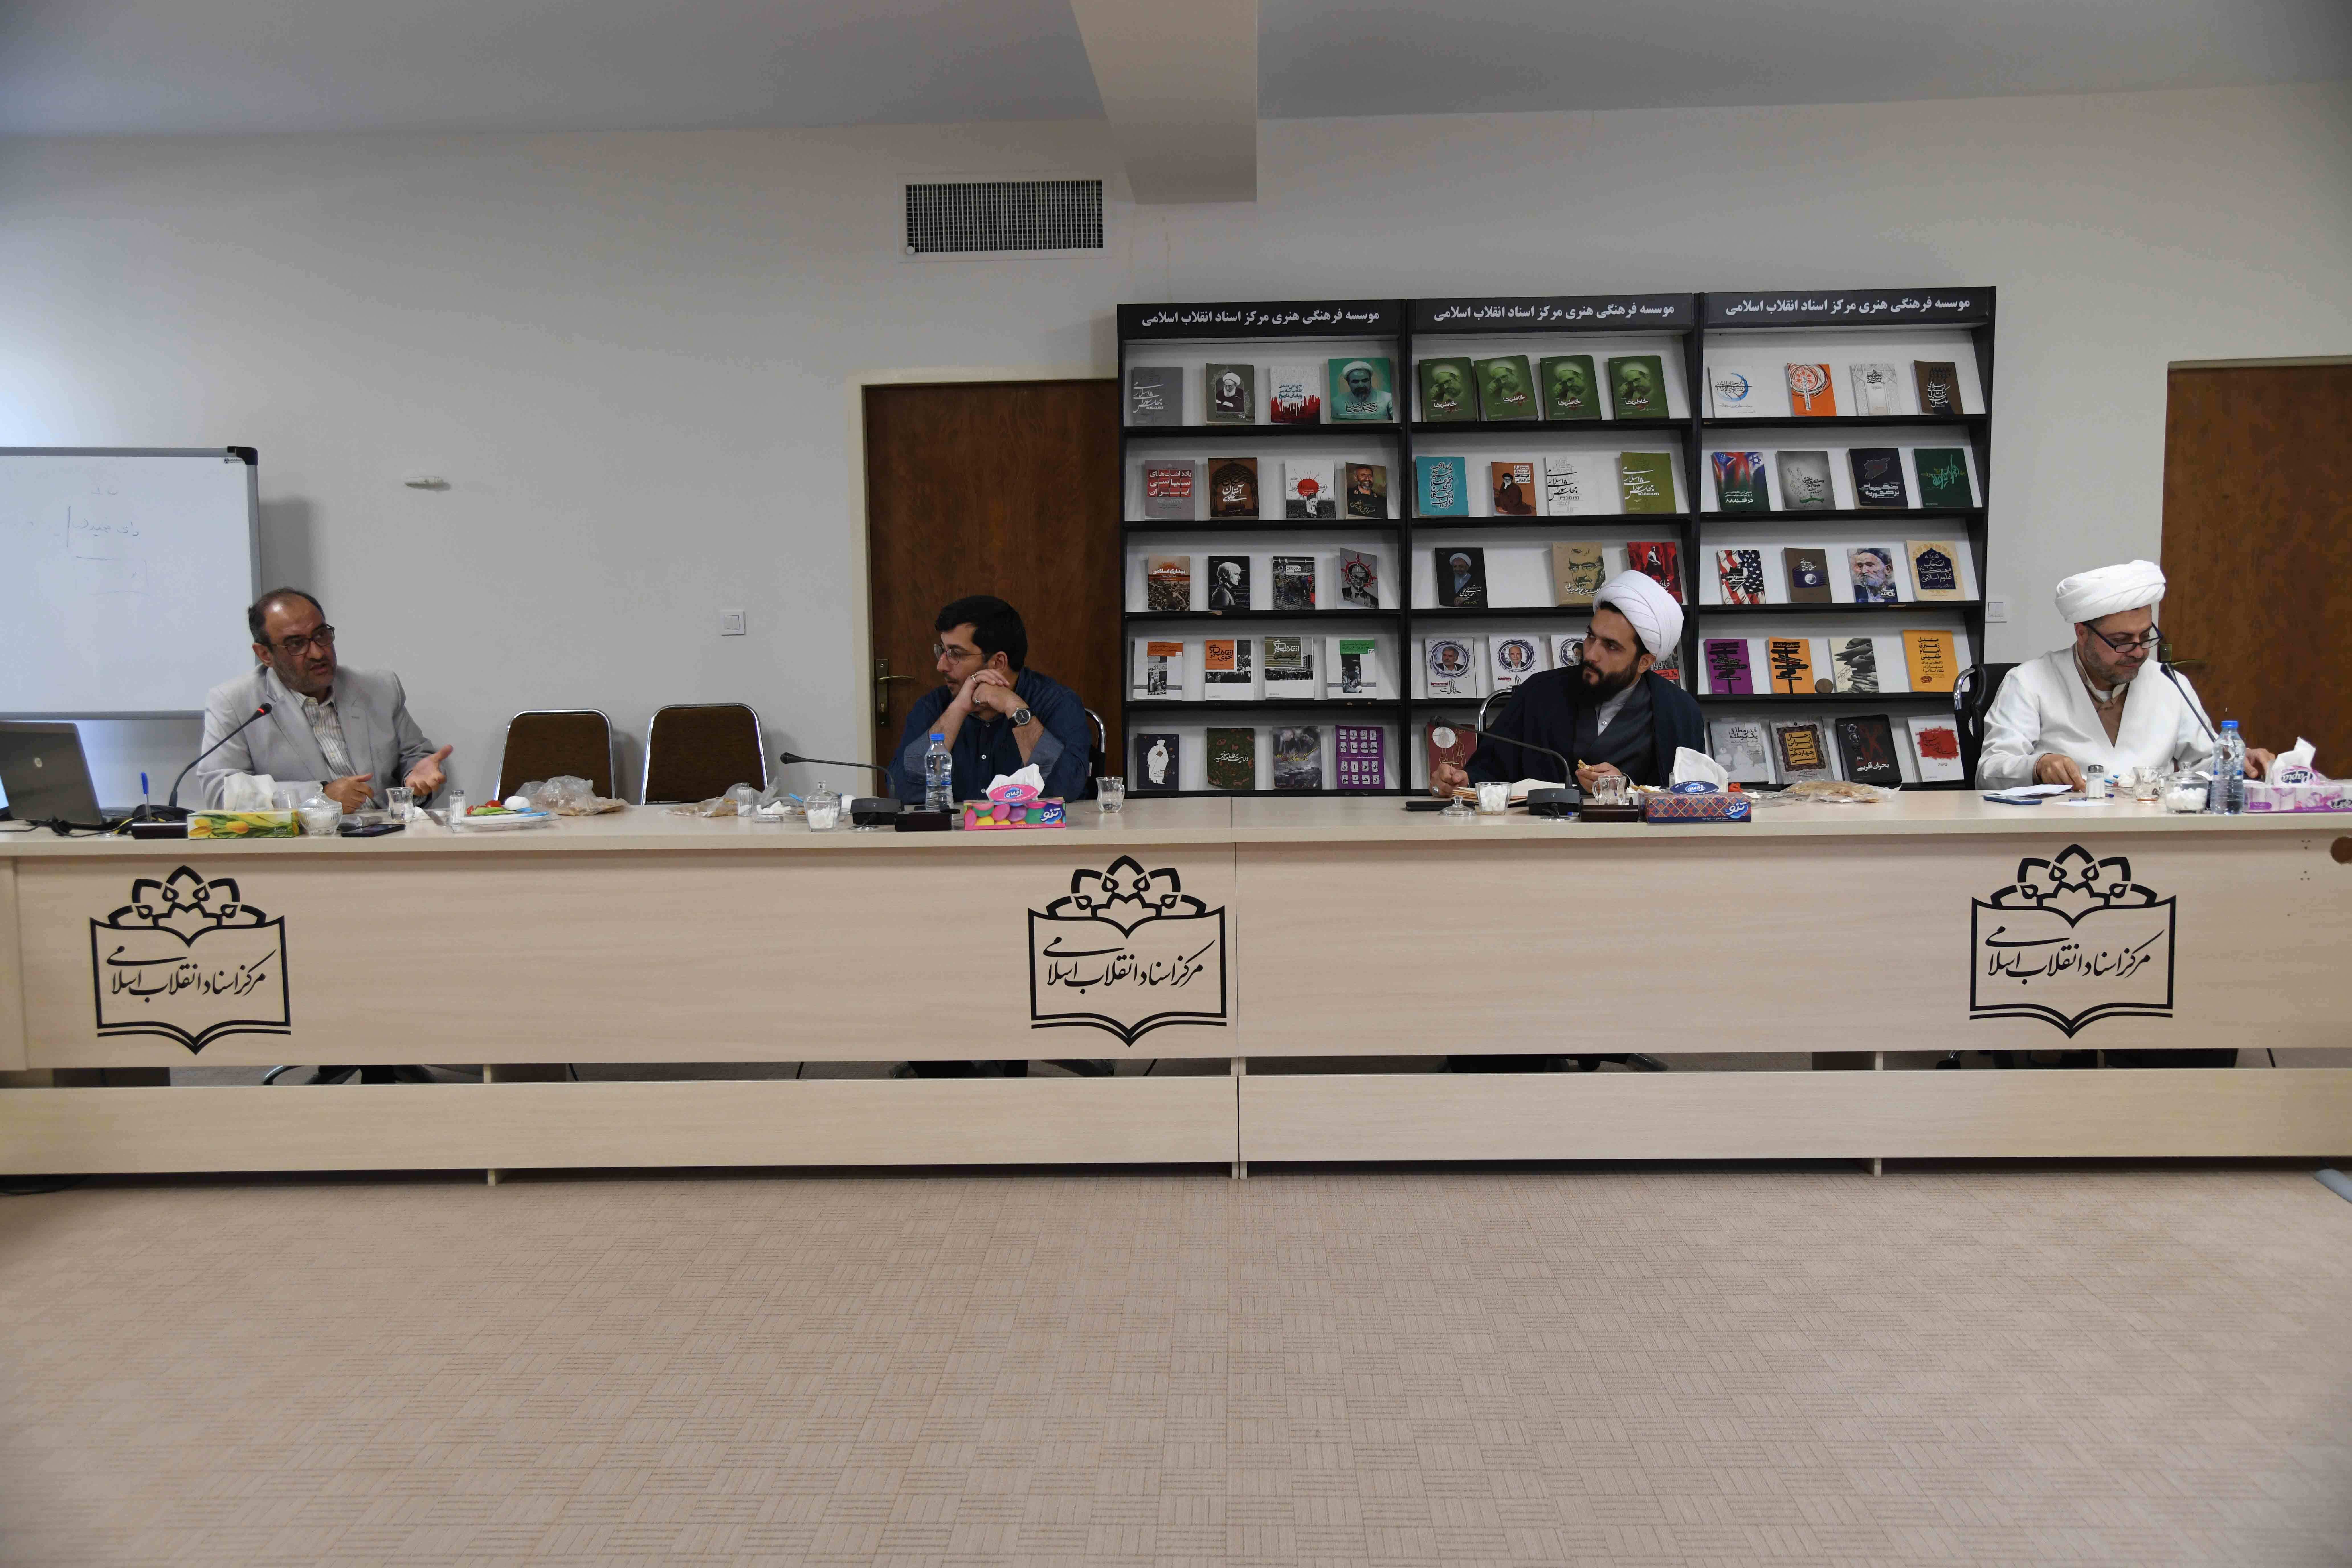 نشست مشترک رئیس مرکز اسناد انقلاب اسلامی با رئیس کتابخانه، موزه و مرکز اسناد مجلس